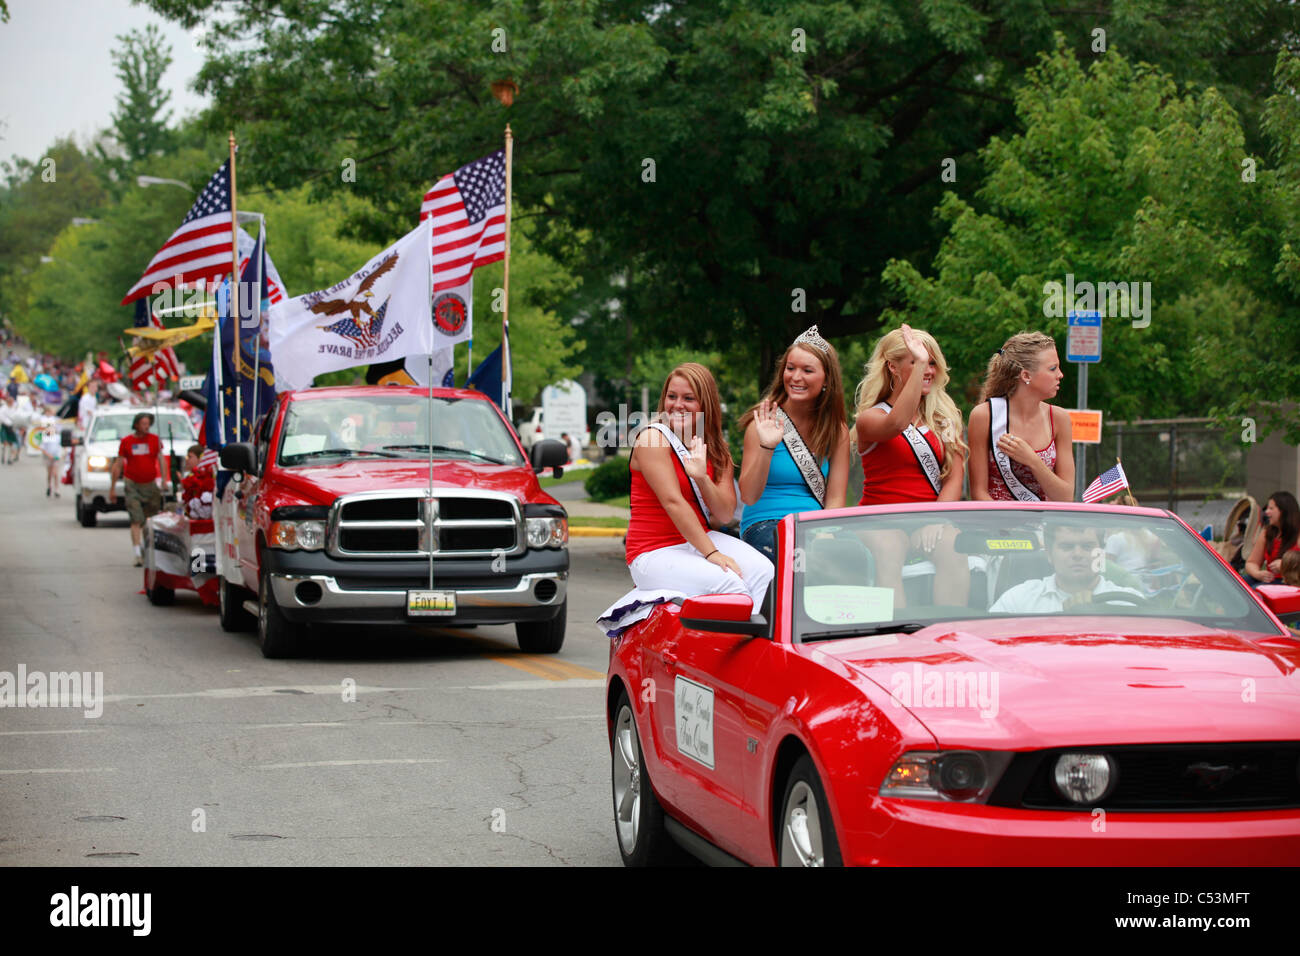 2010 Monroe County Fair Queens équitation dans Mustang rouge pendant 4 juillet Parade --- Bloomington Banque D'Images